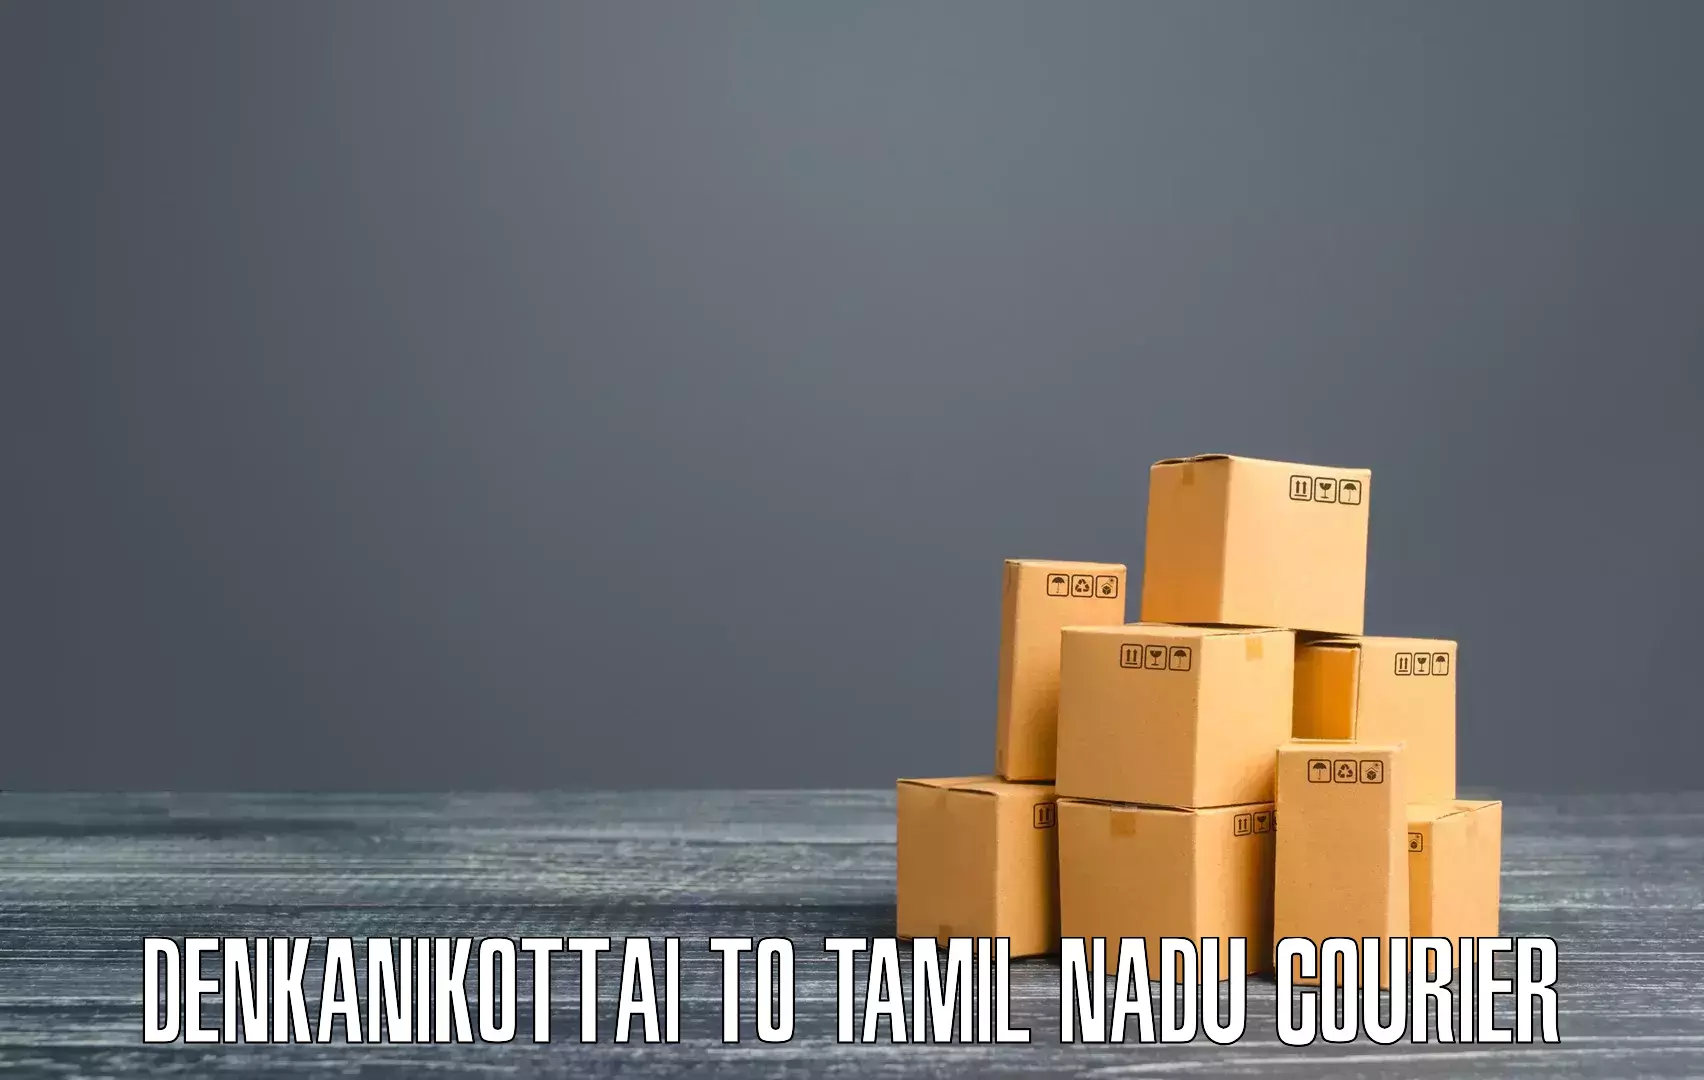 Scheduled delivery Denkanikottai to Thiruvadanai